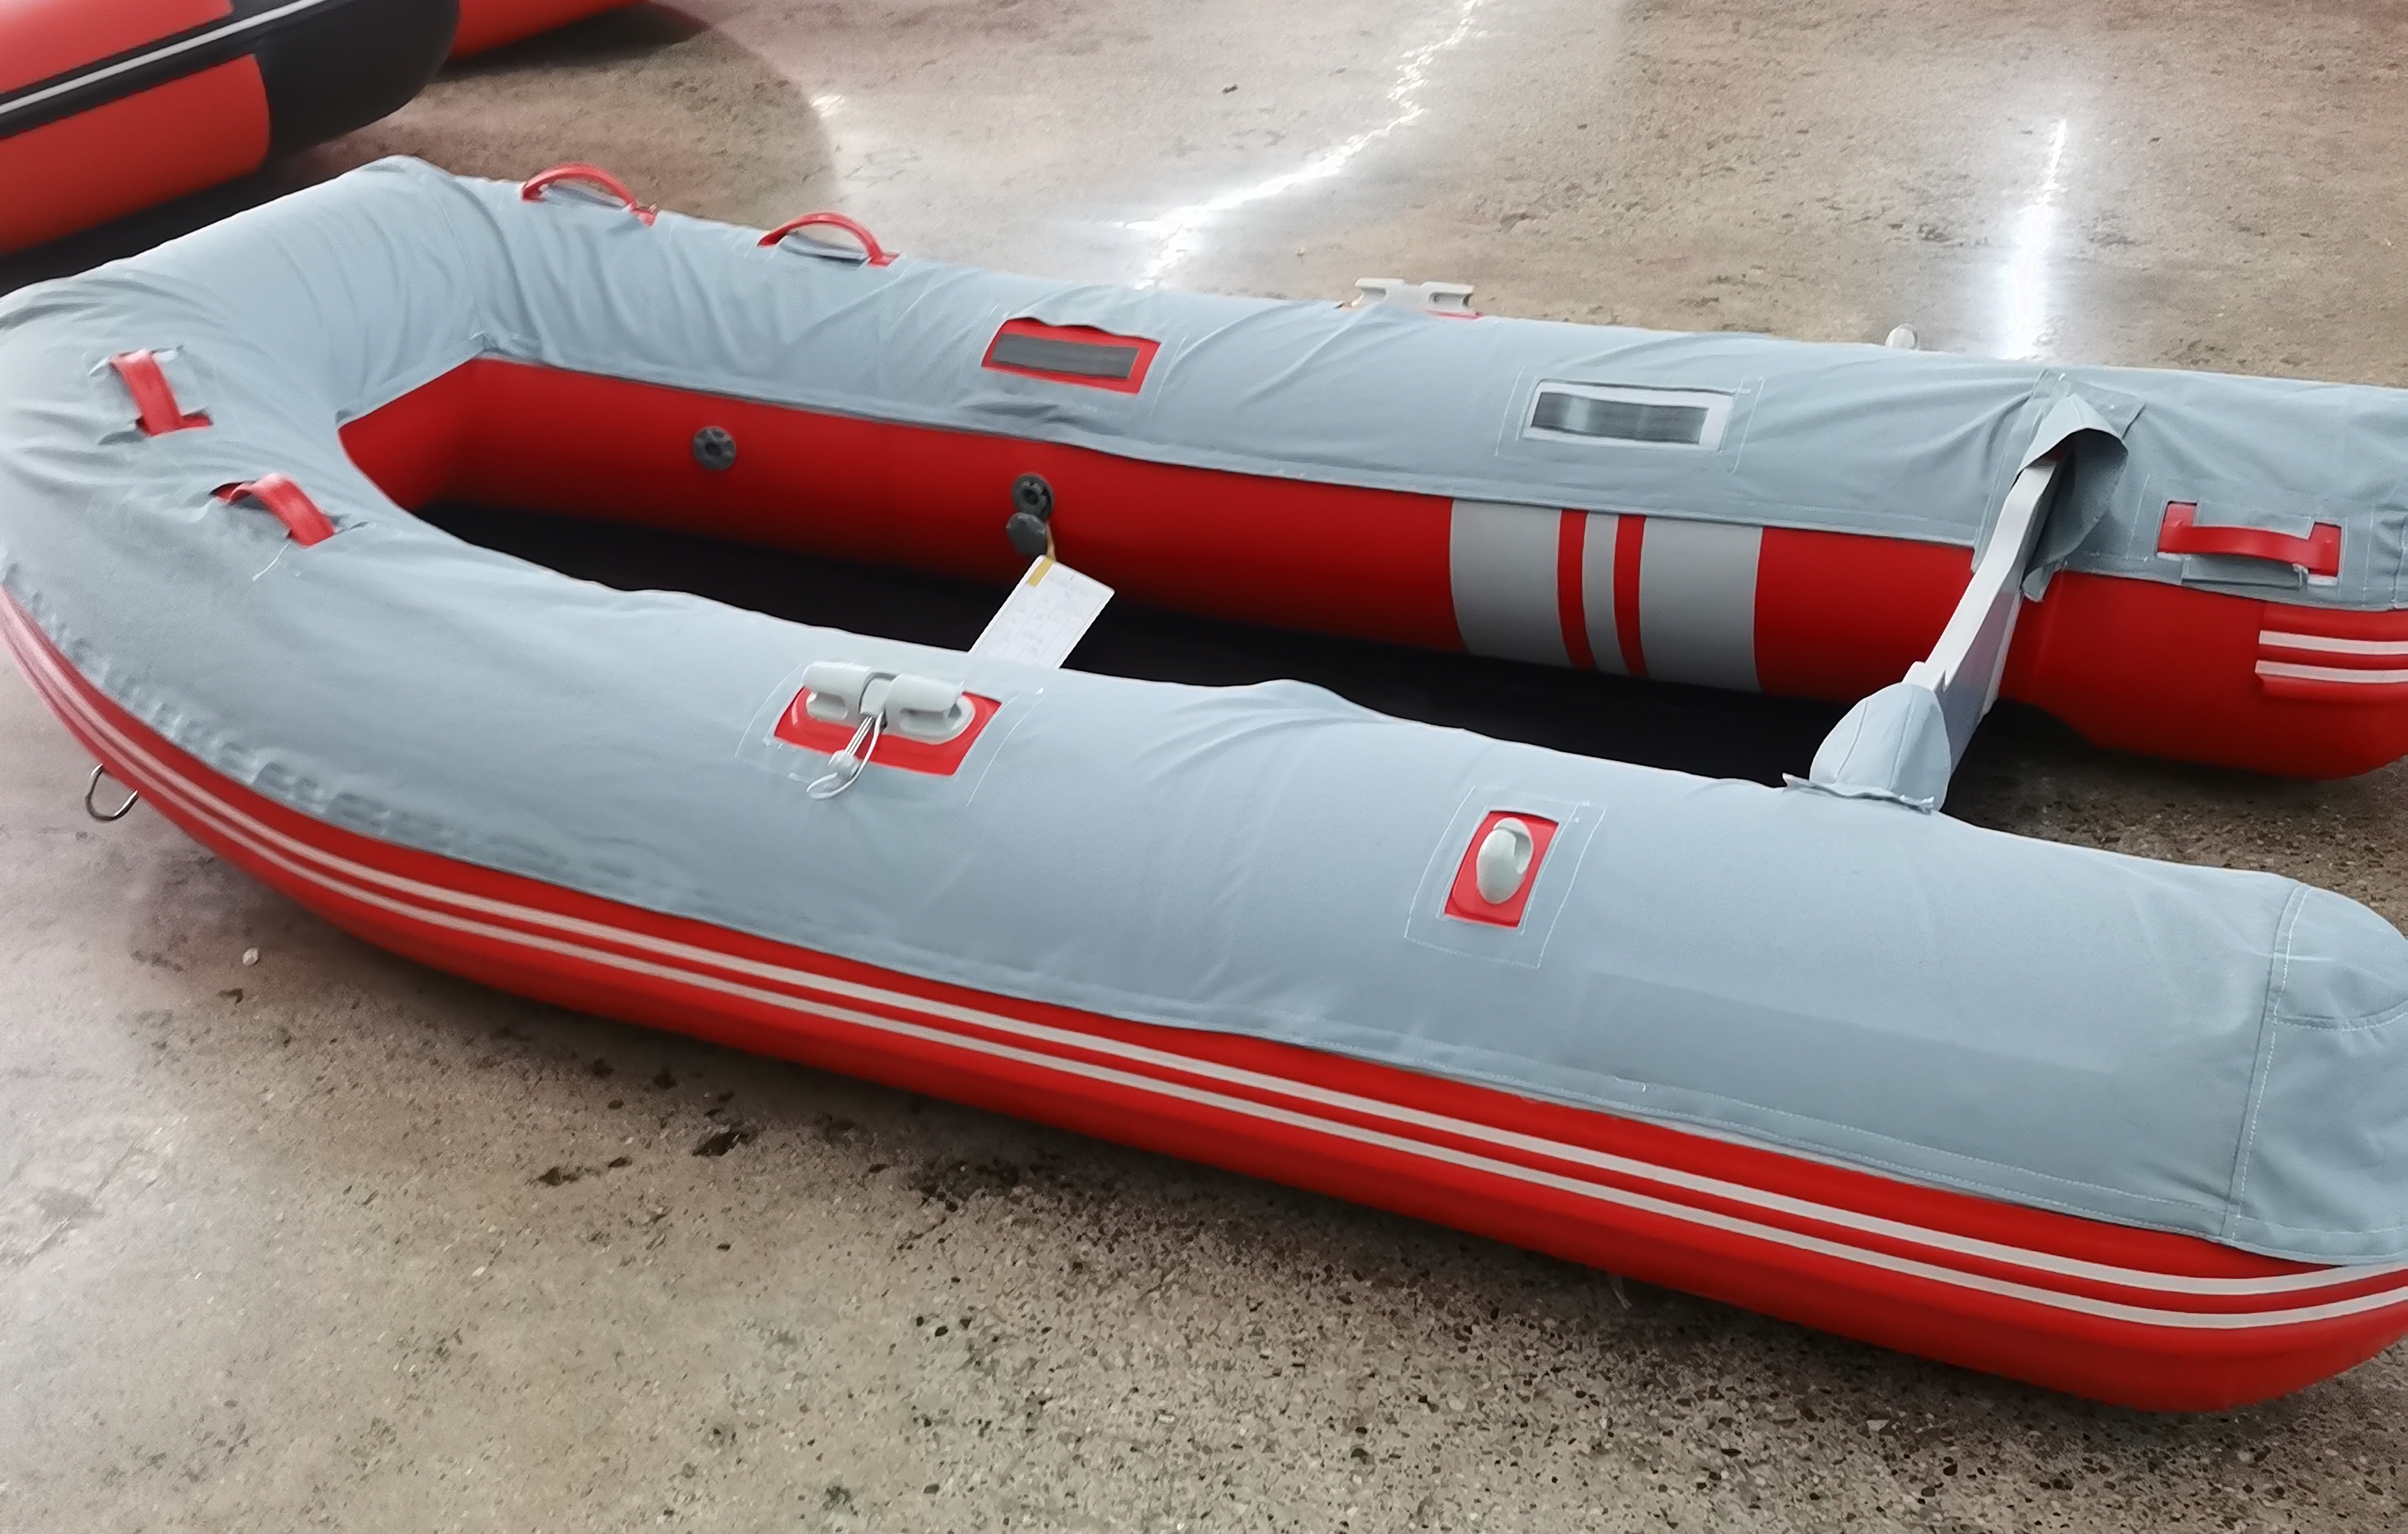 2022 Production Photo of the Red Azzurro Mare Triton Boats